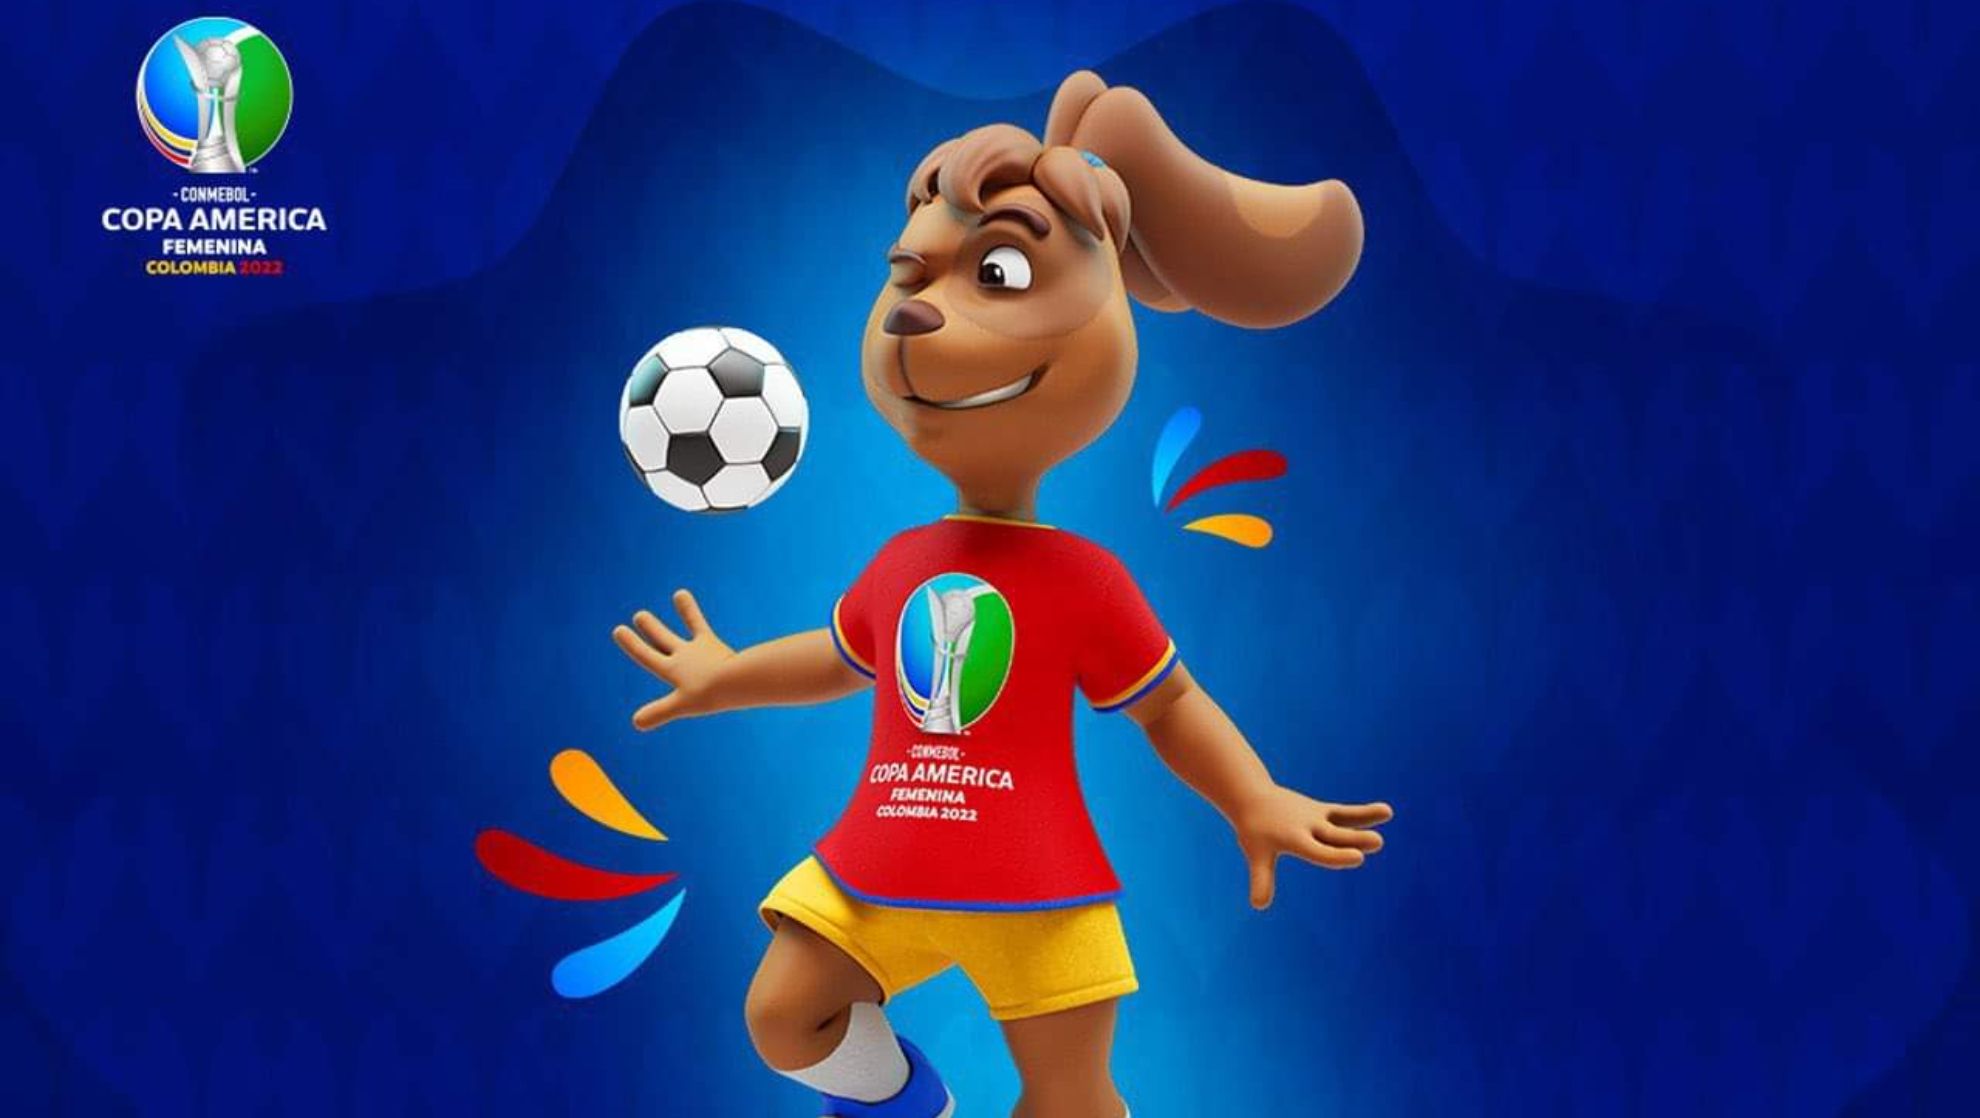 ¡Estallan las redes! Indignación porque mascota de Copa América Femenina es una perra.